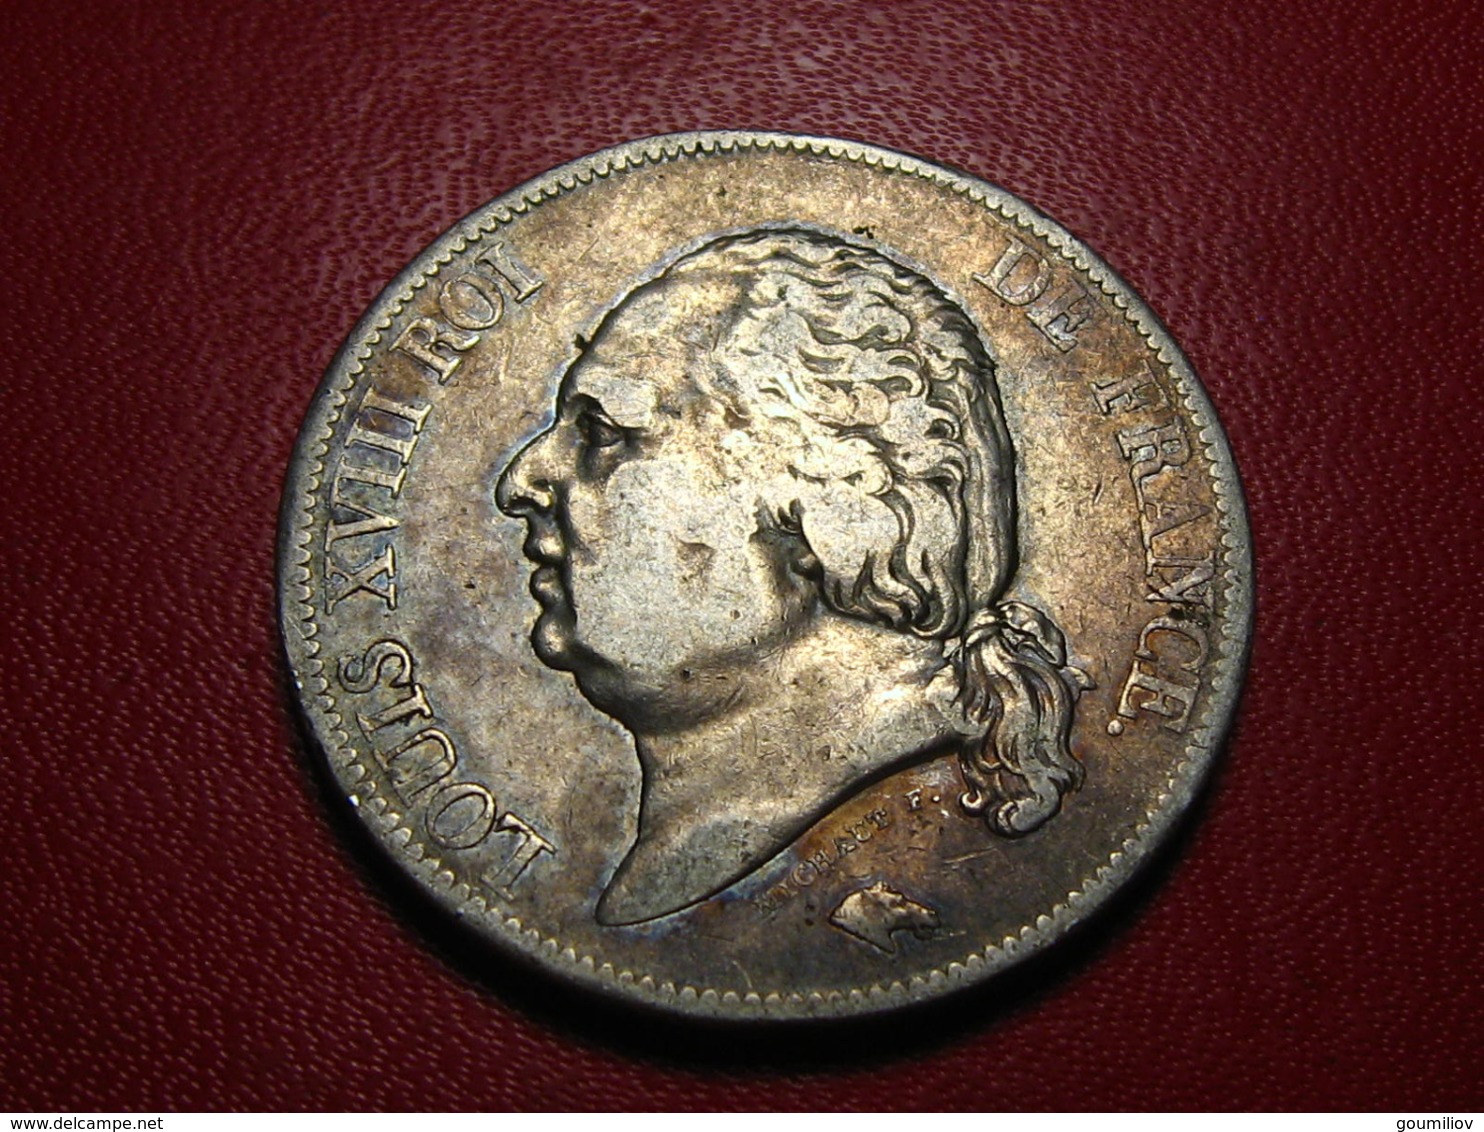 France - 5 francs 1818 B Rouen Louis XVIII - Fauté double frappe sur la tranche 3847